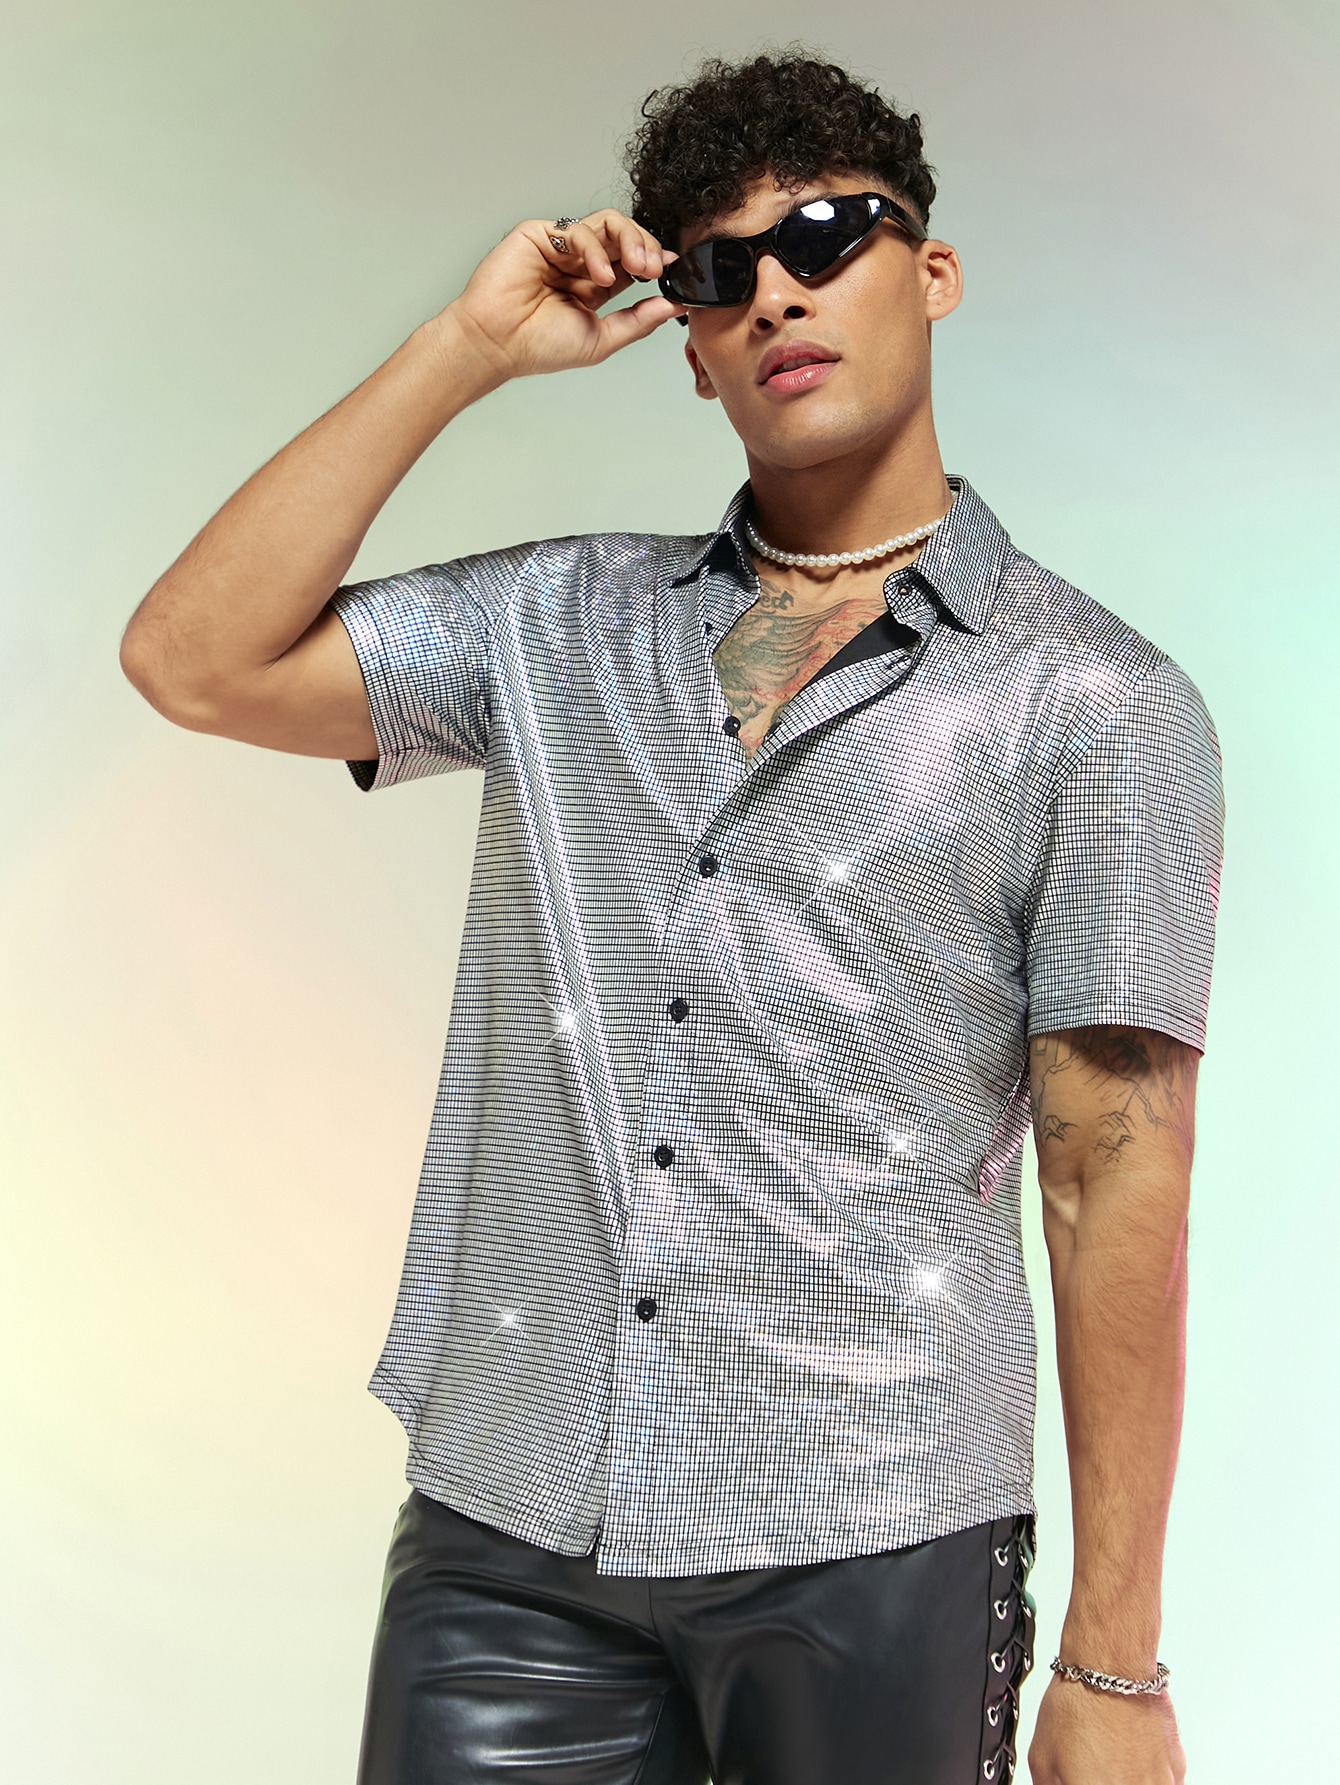 Мужская тканая рубашка с короткими рукавами Manfinity AFTRDRK с металлизированной текстурой, серебро